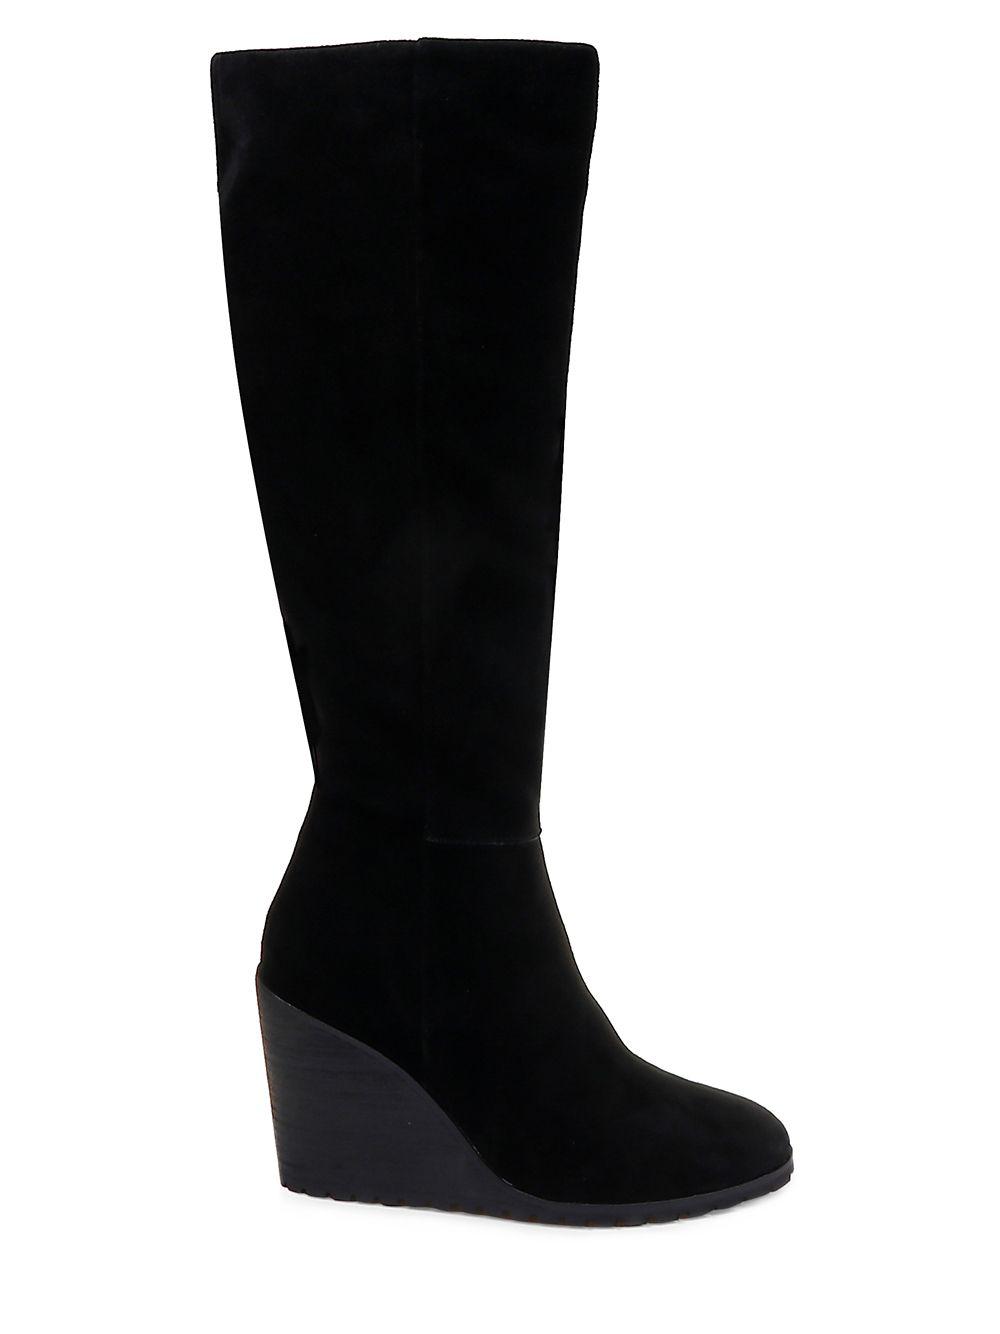 Splendid Suede Knee-high Wedge Boots in Black - Lyst